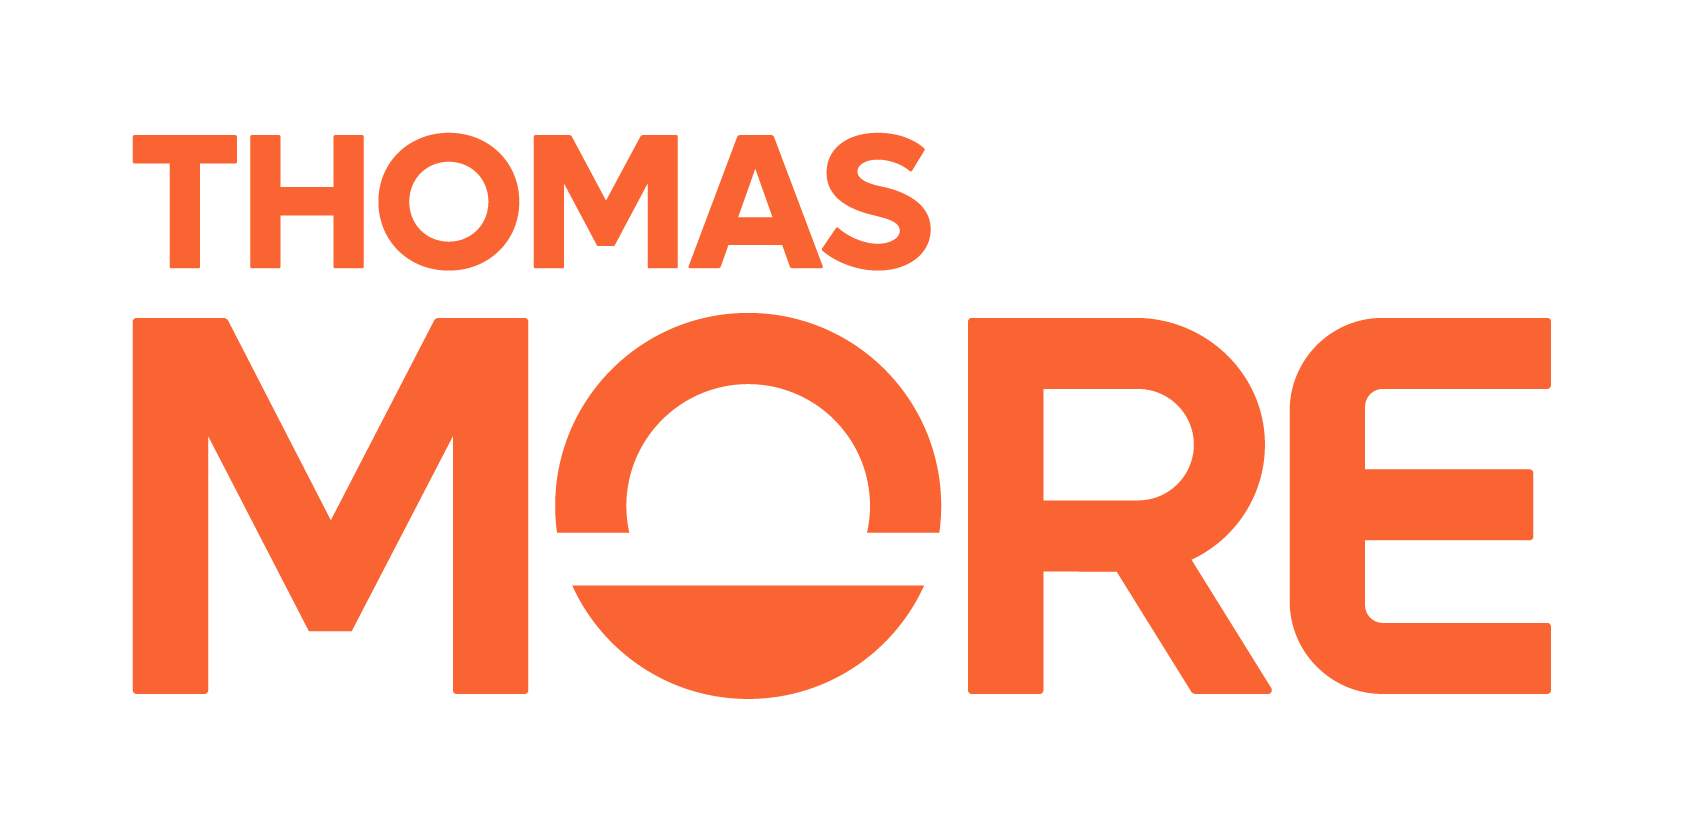 Thomas More Logo